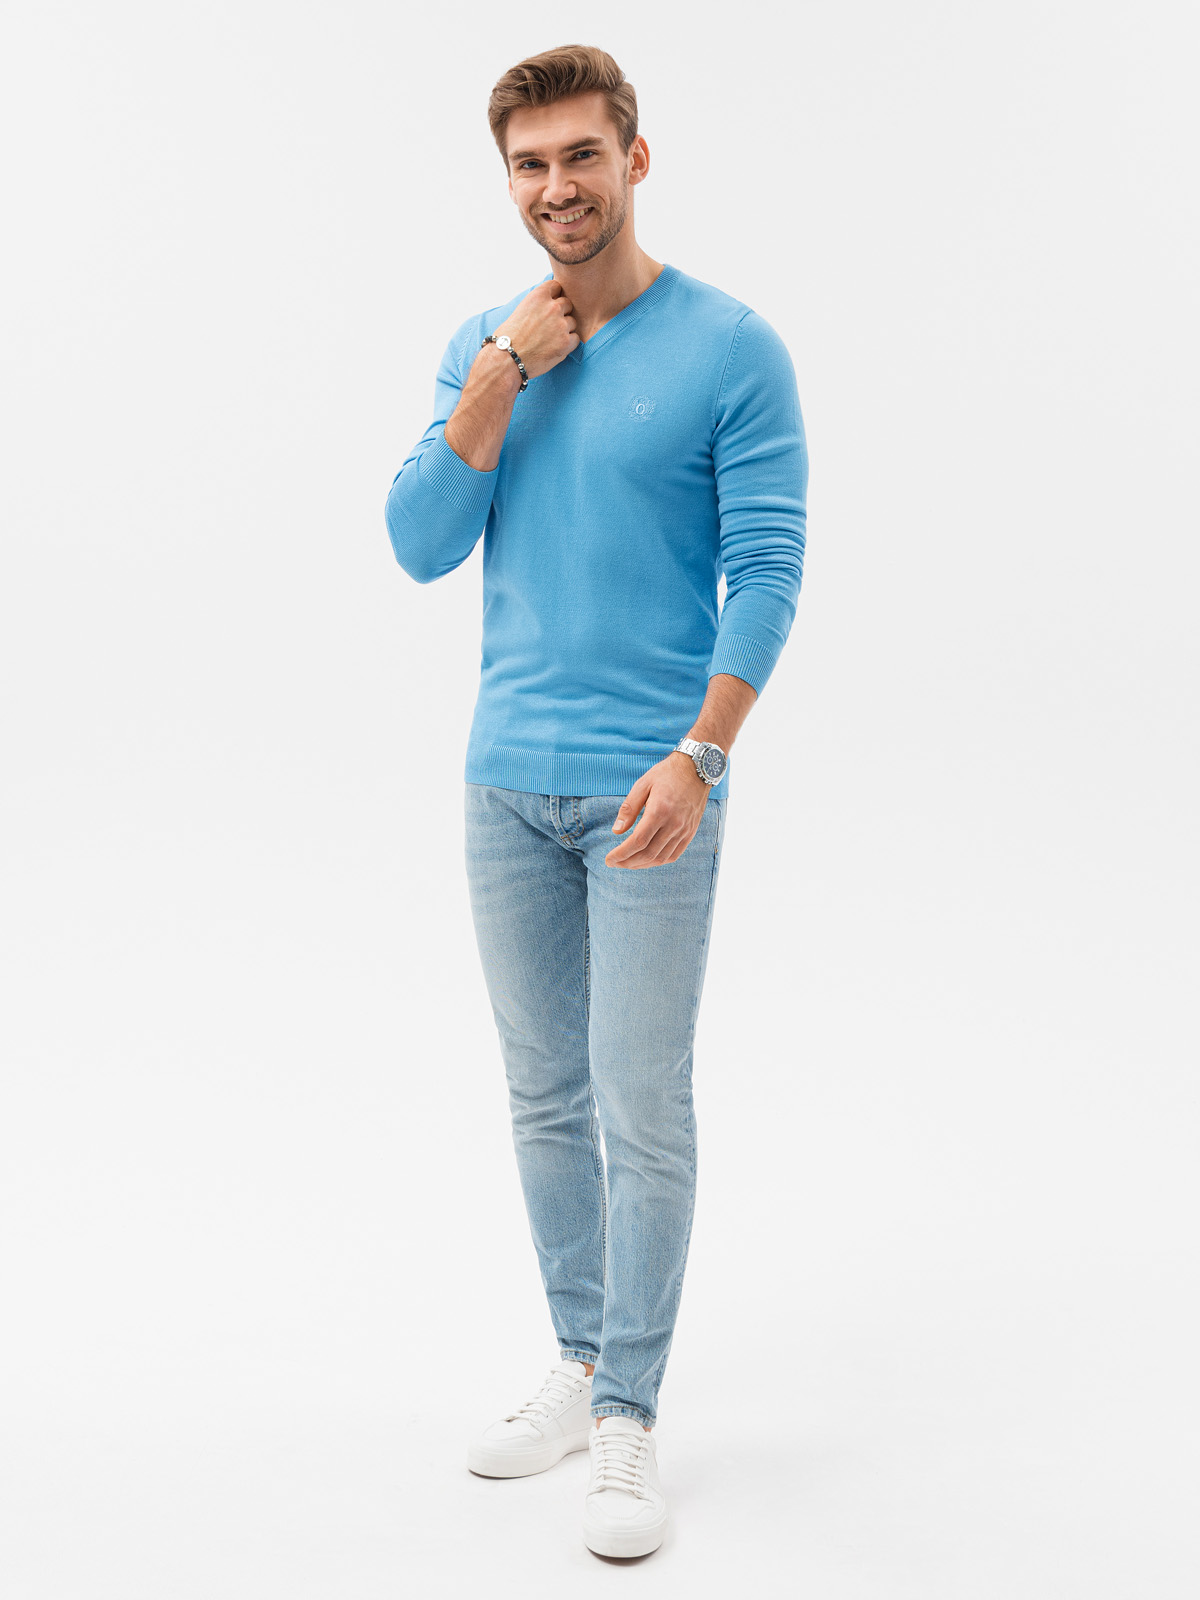 Men's sweater - light blue E191   - Men's clothing online